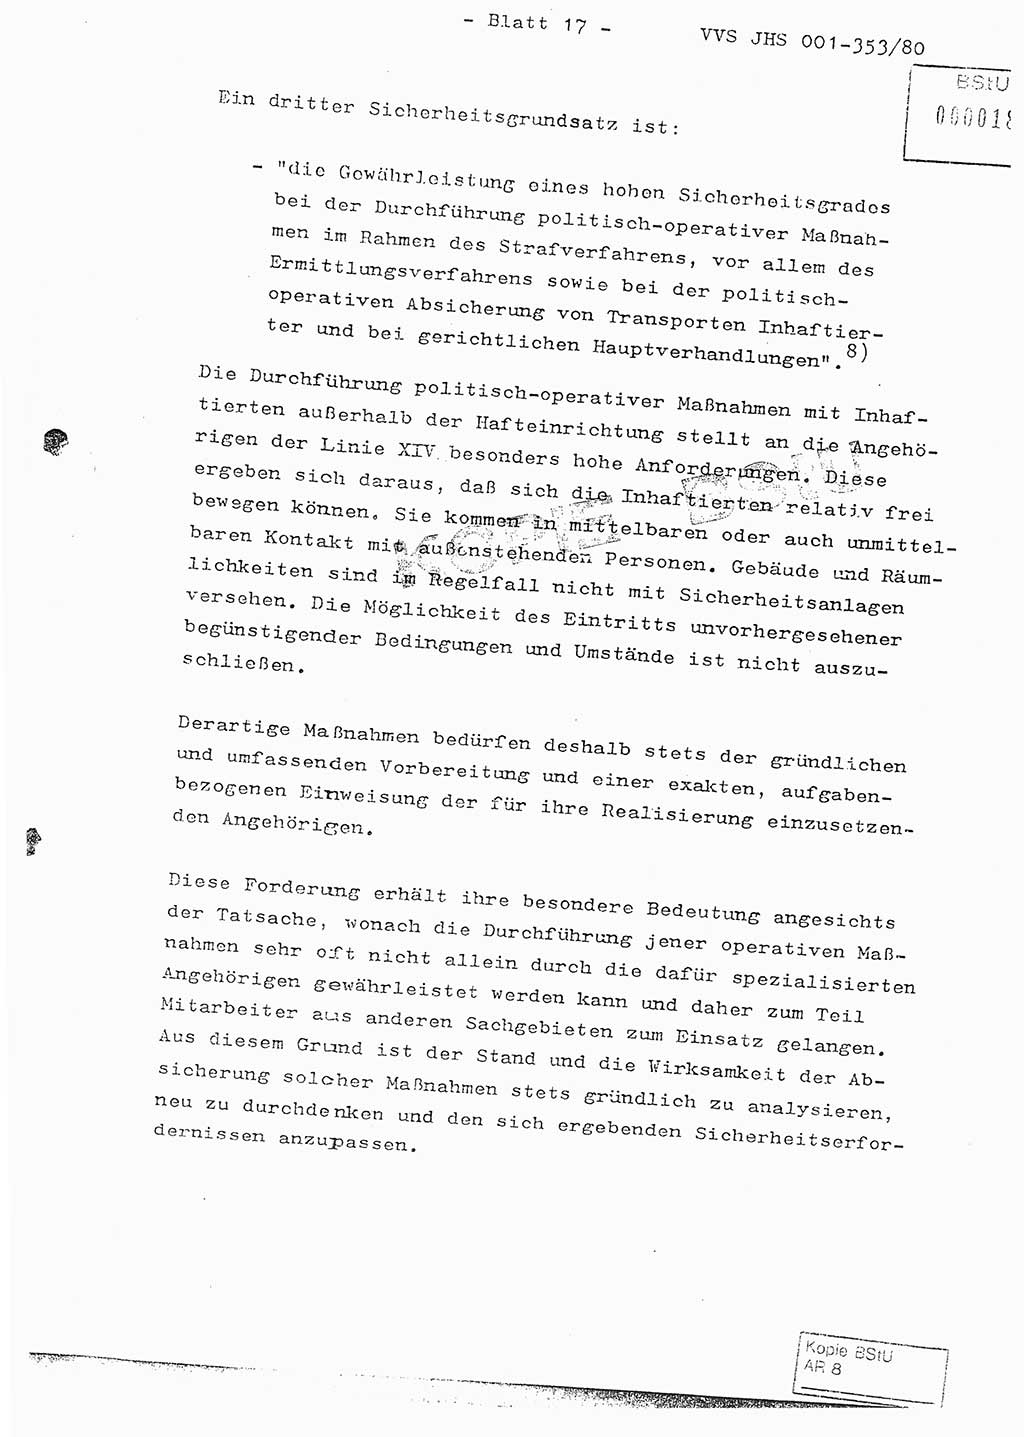 Diplomarbeit Hauptmann Joachim Klaumünzner (Abt. ⅩⅣ), Ministerium für Staatssicherheit (MfS) [Deutsche Demokratische Republik (DDR)], Juristische Hochschule (JHS), Vertrauliche Verschlußsache (VVS) o001-353/80, Potsdam 1980, Blatt 17 (Dipl.-Arb. MfS DDR JHS VVS o001-353/80 1980, Bl. 17)